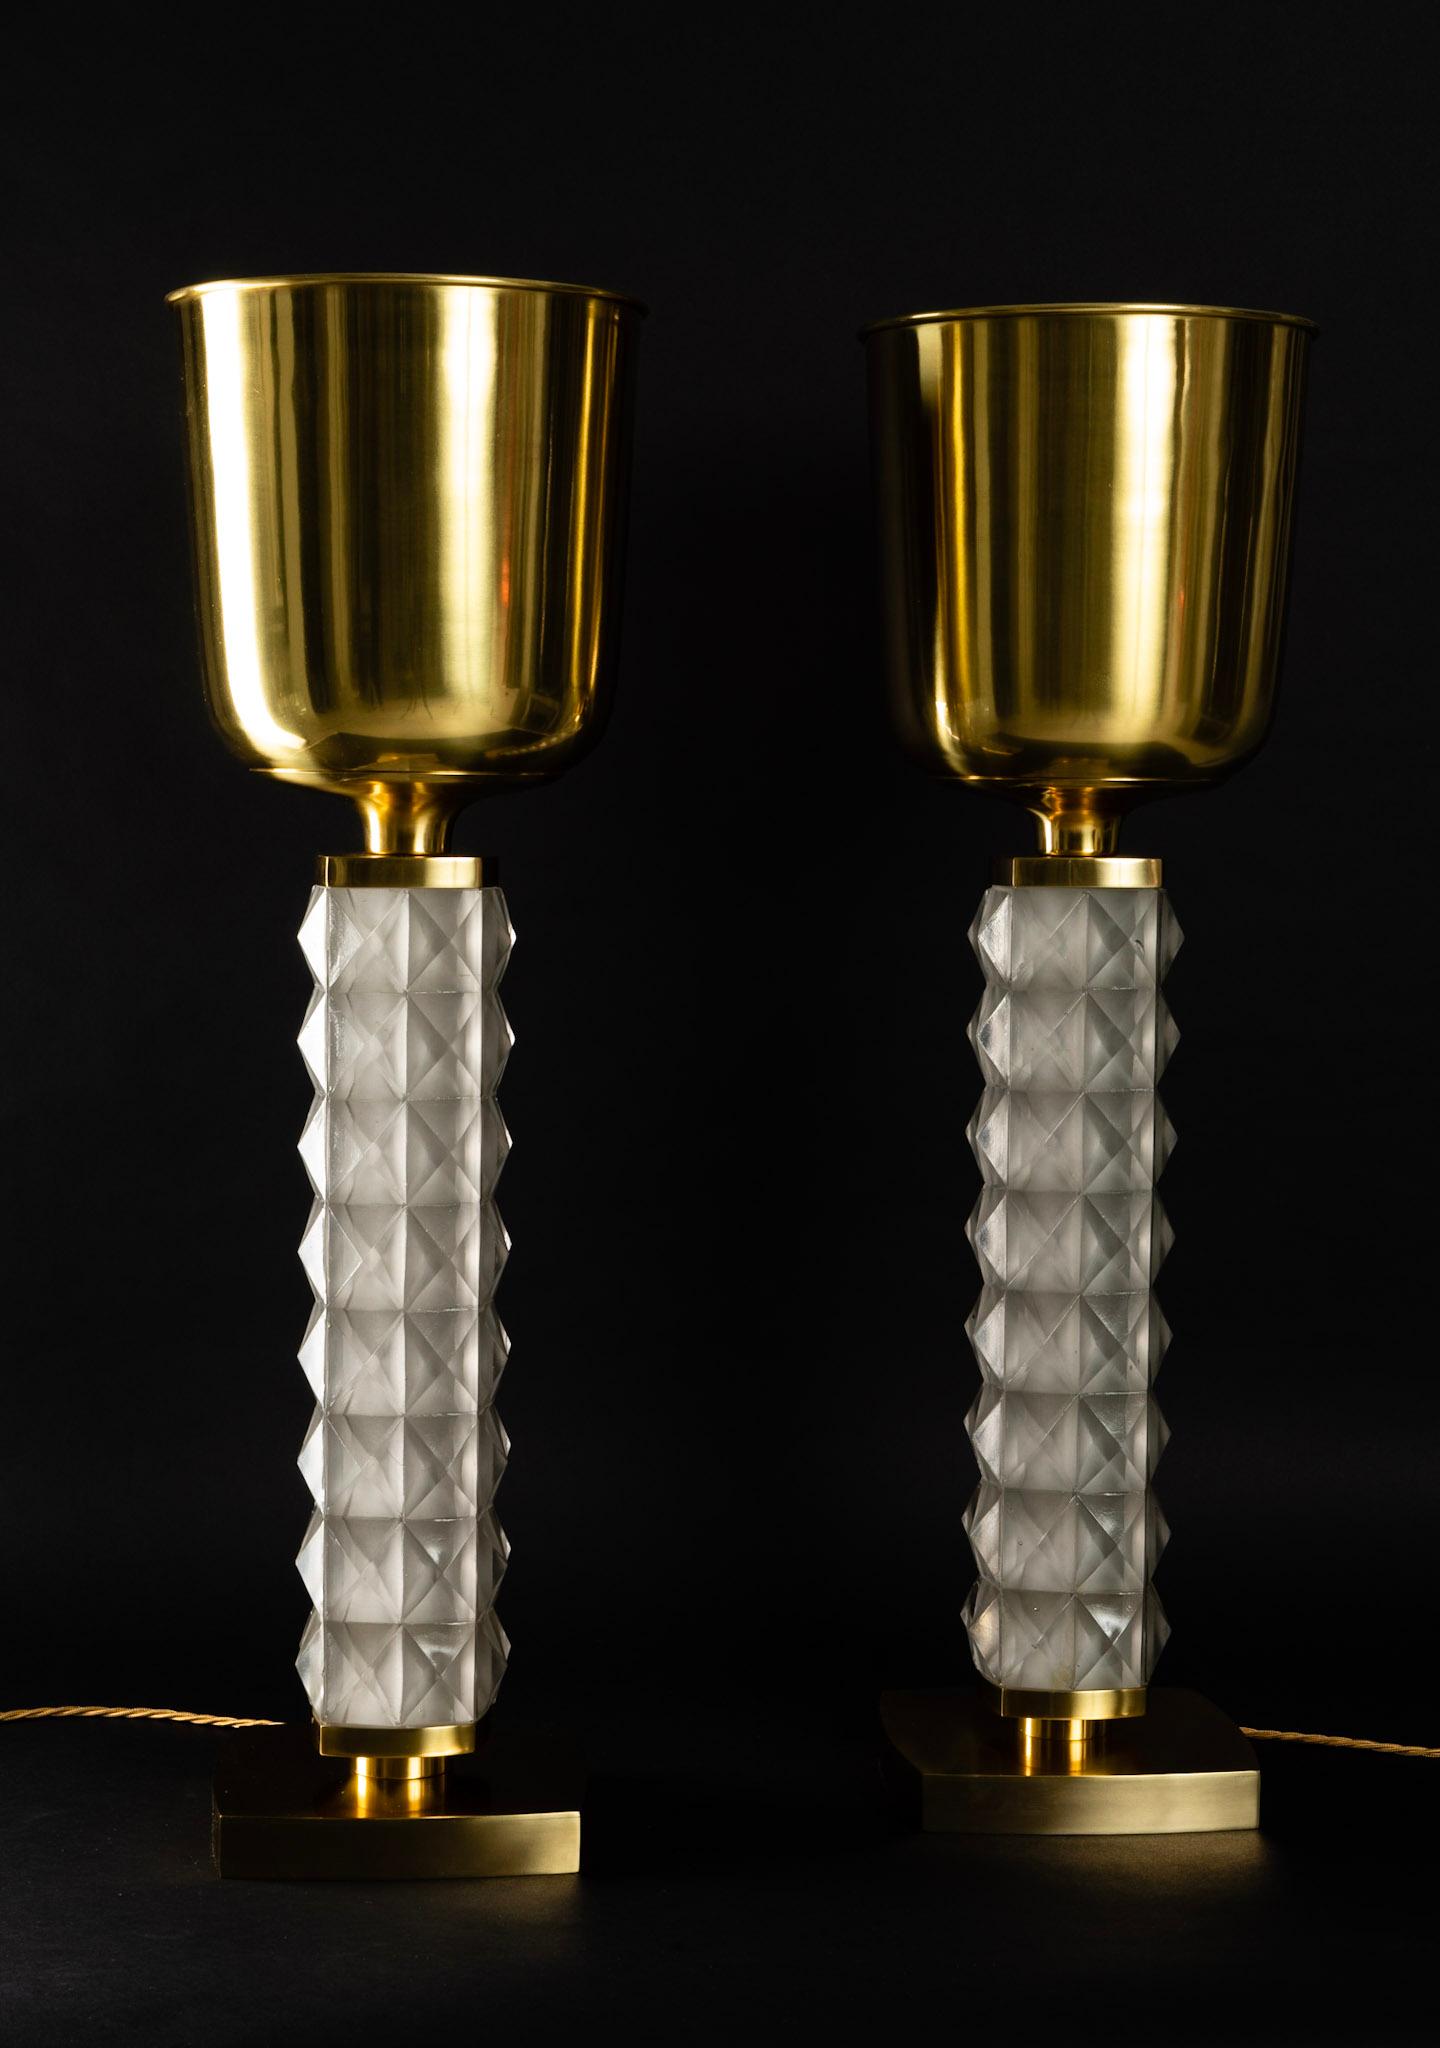 Paire de lampes 'MEZZE LUMINATOR' de Roberto Giulio Rida

Grandes lampes de table conçues et produites par Roberto Giulio Rida, qui a voulu s'inspirer du passé en reprenant le modèle 